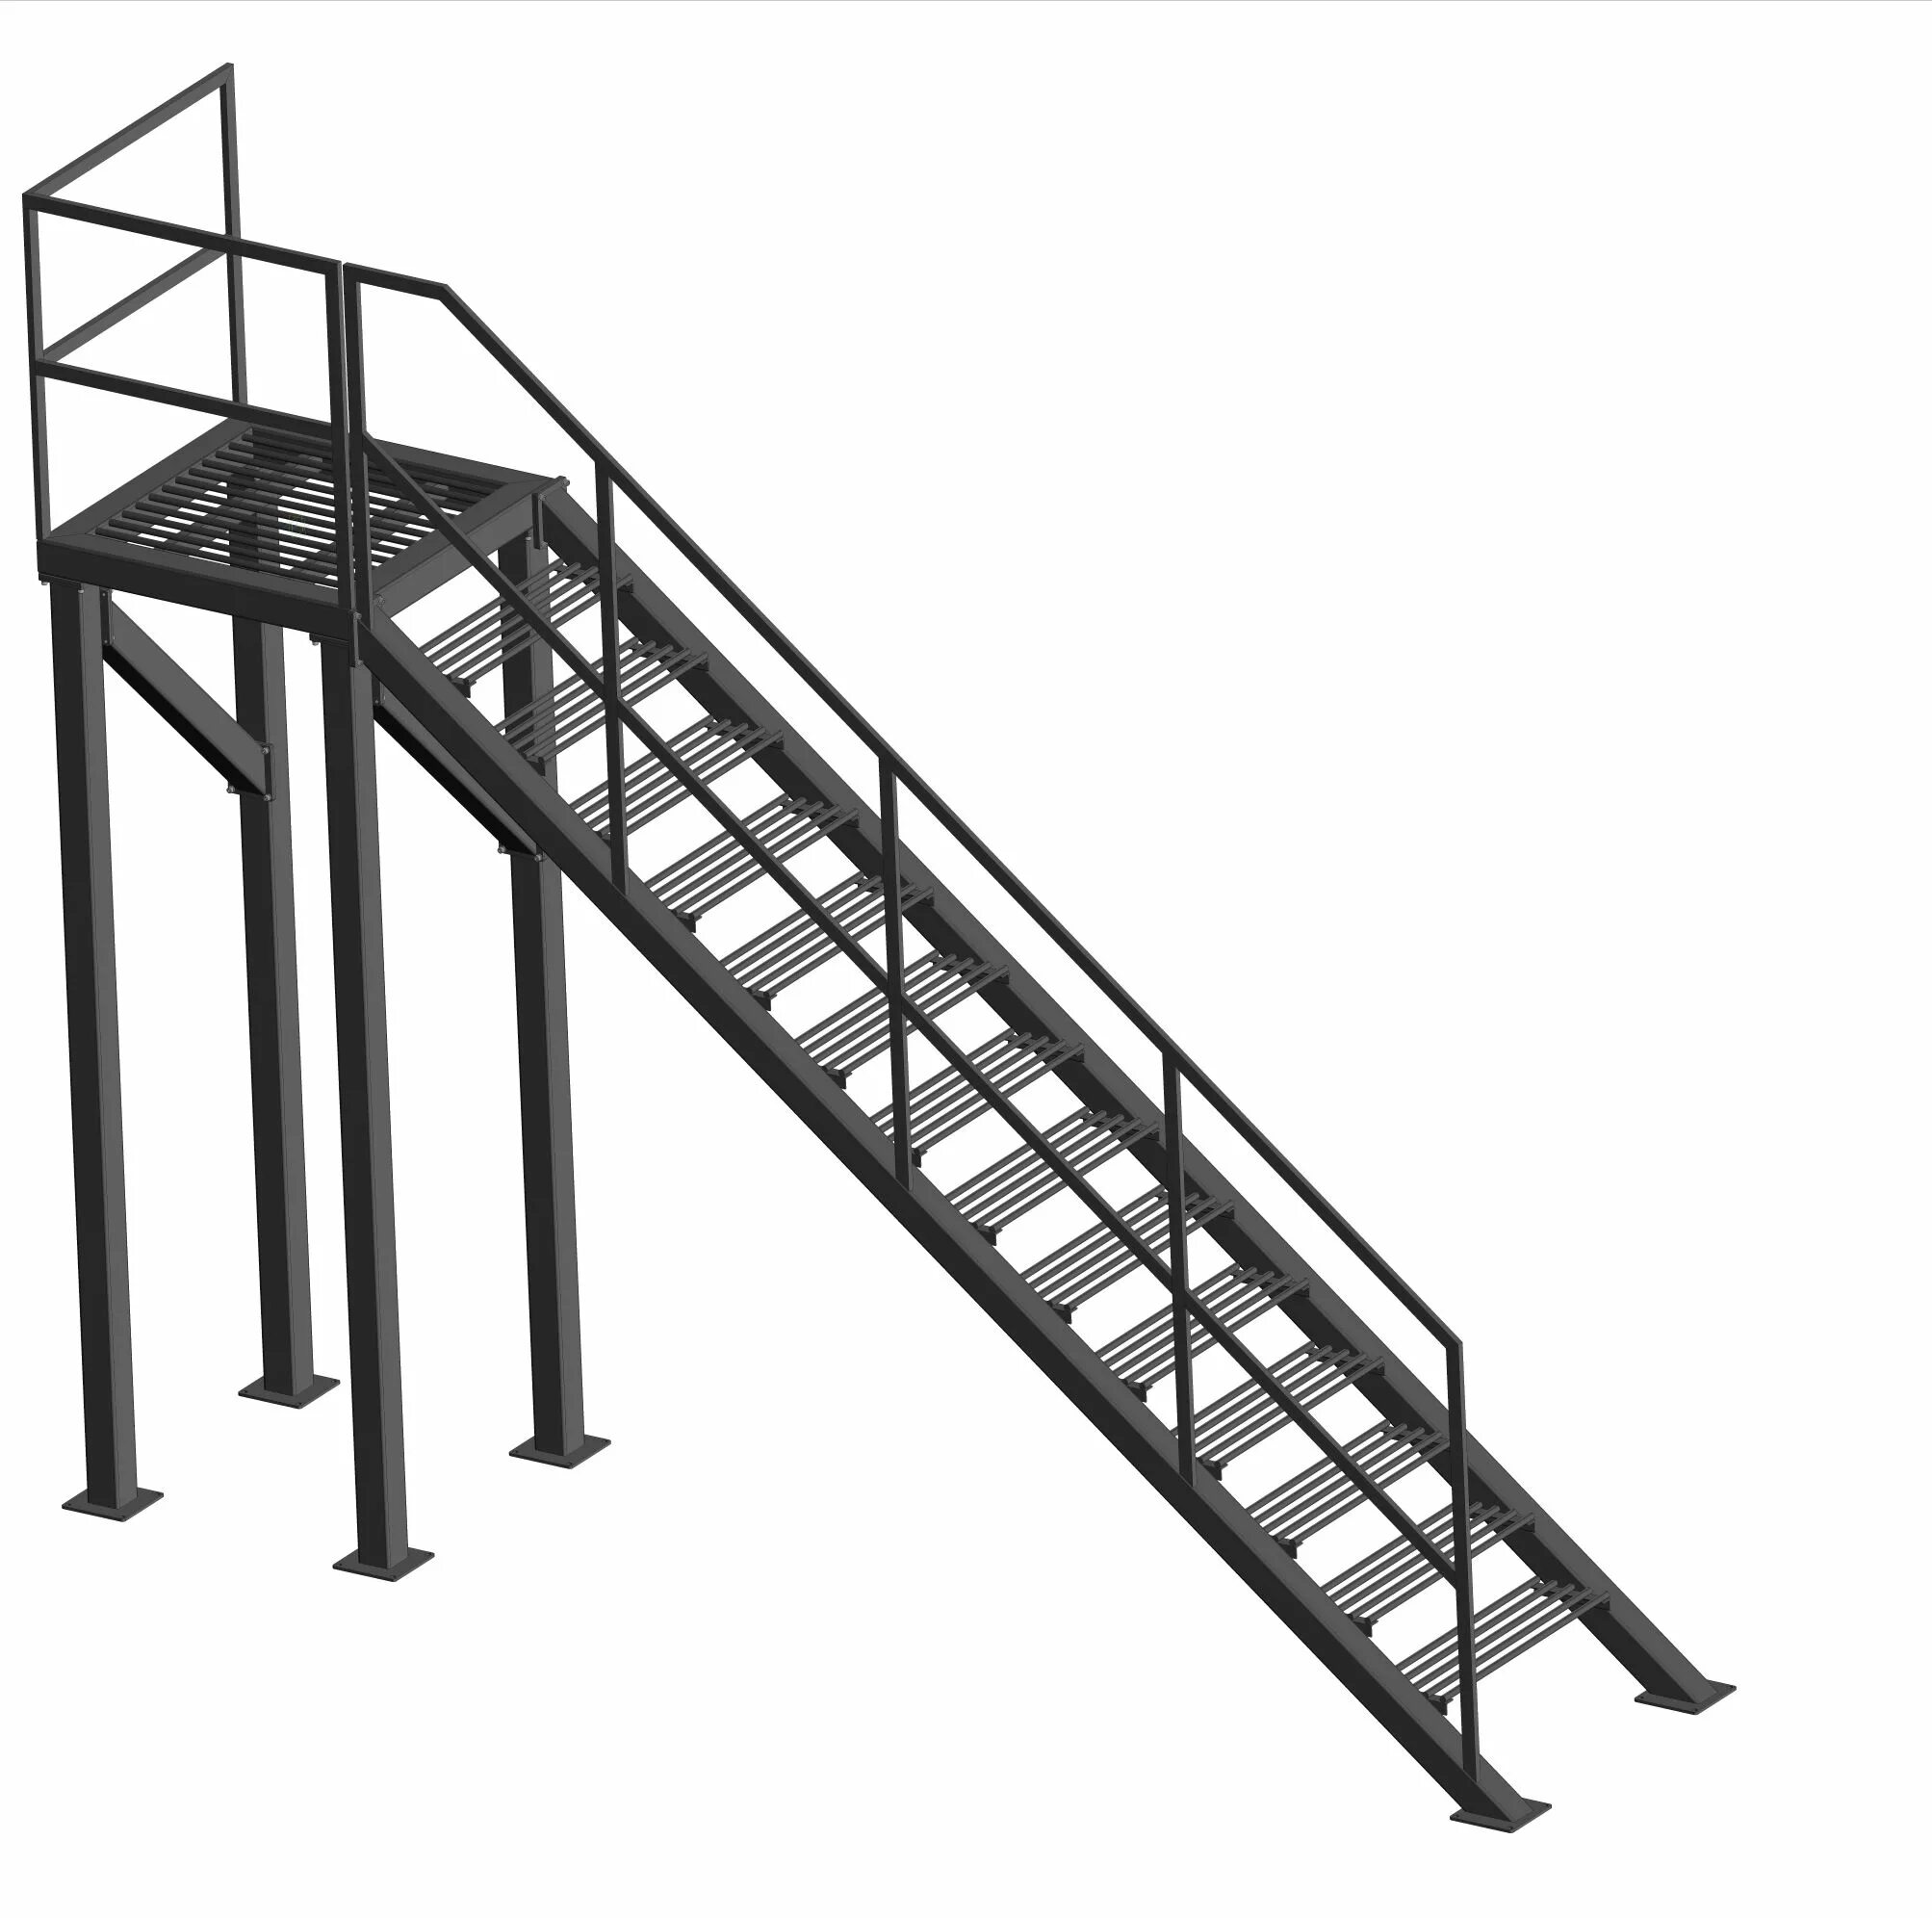 Лестница металлическая, высота 1100мм. Компас 3d лестницы металлические. Лестница с площадкой (лестница для обслуживания АПГ/Эл.обжига) ал725.00. 3d модели лестниц металлических.